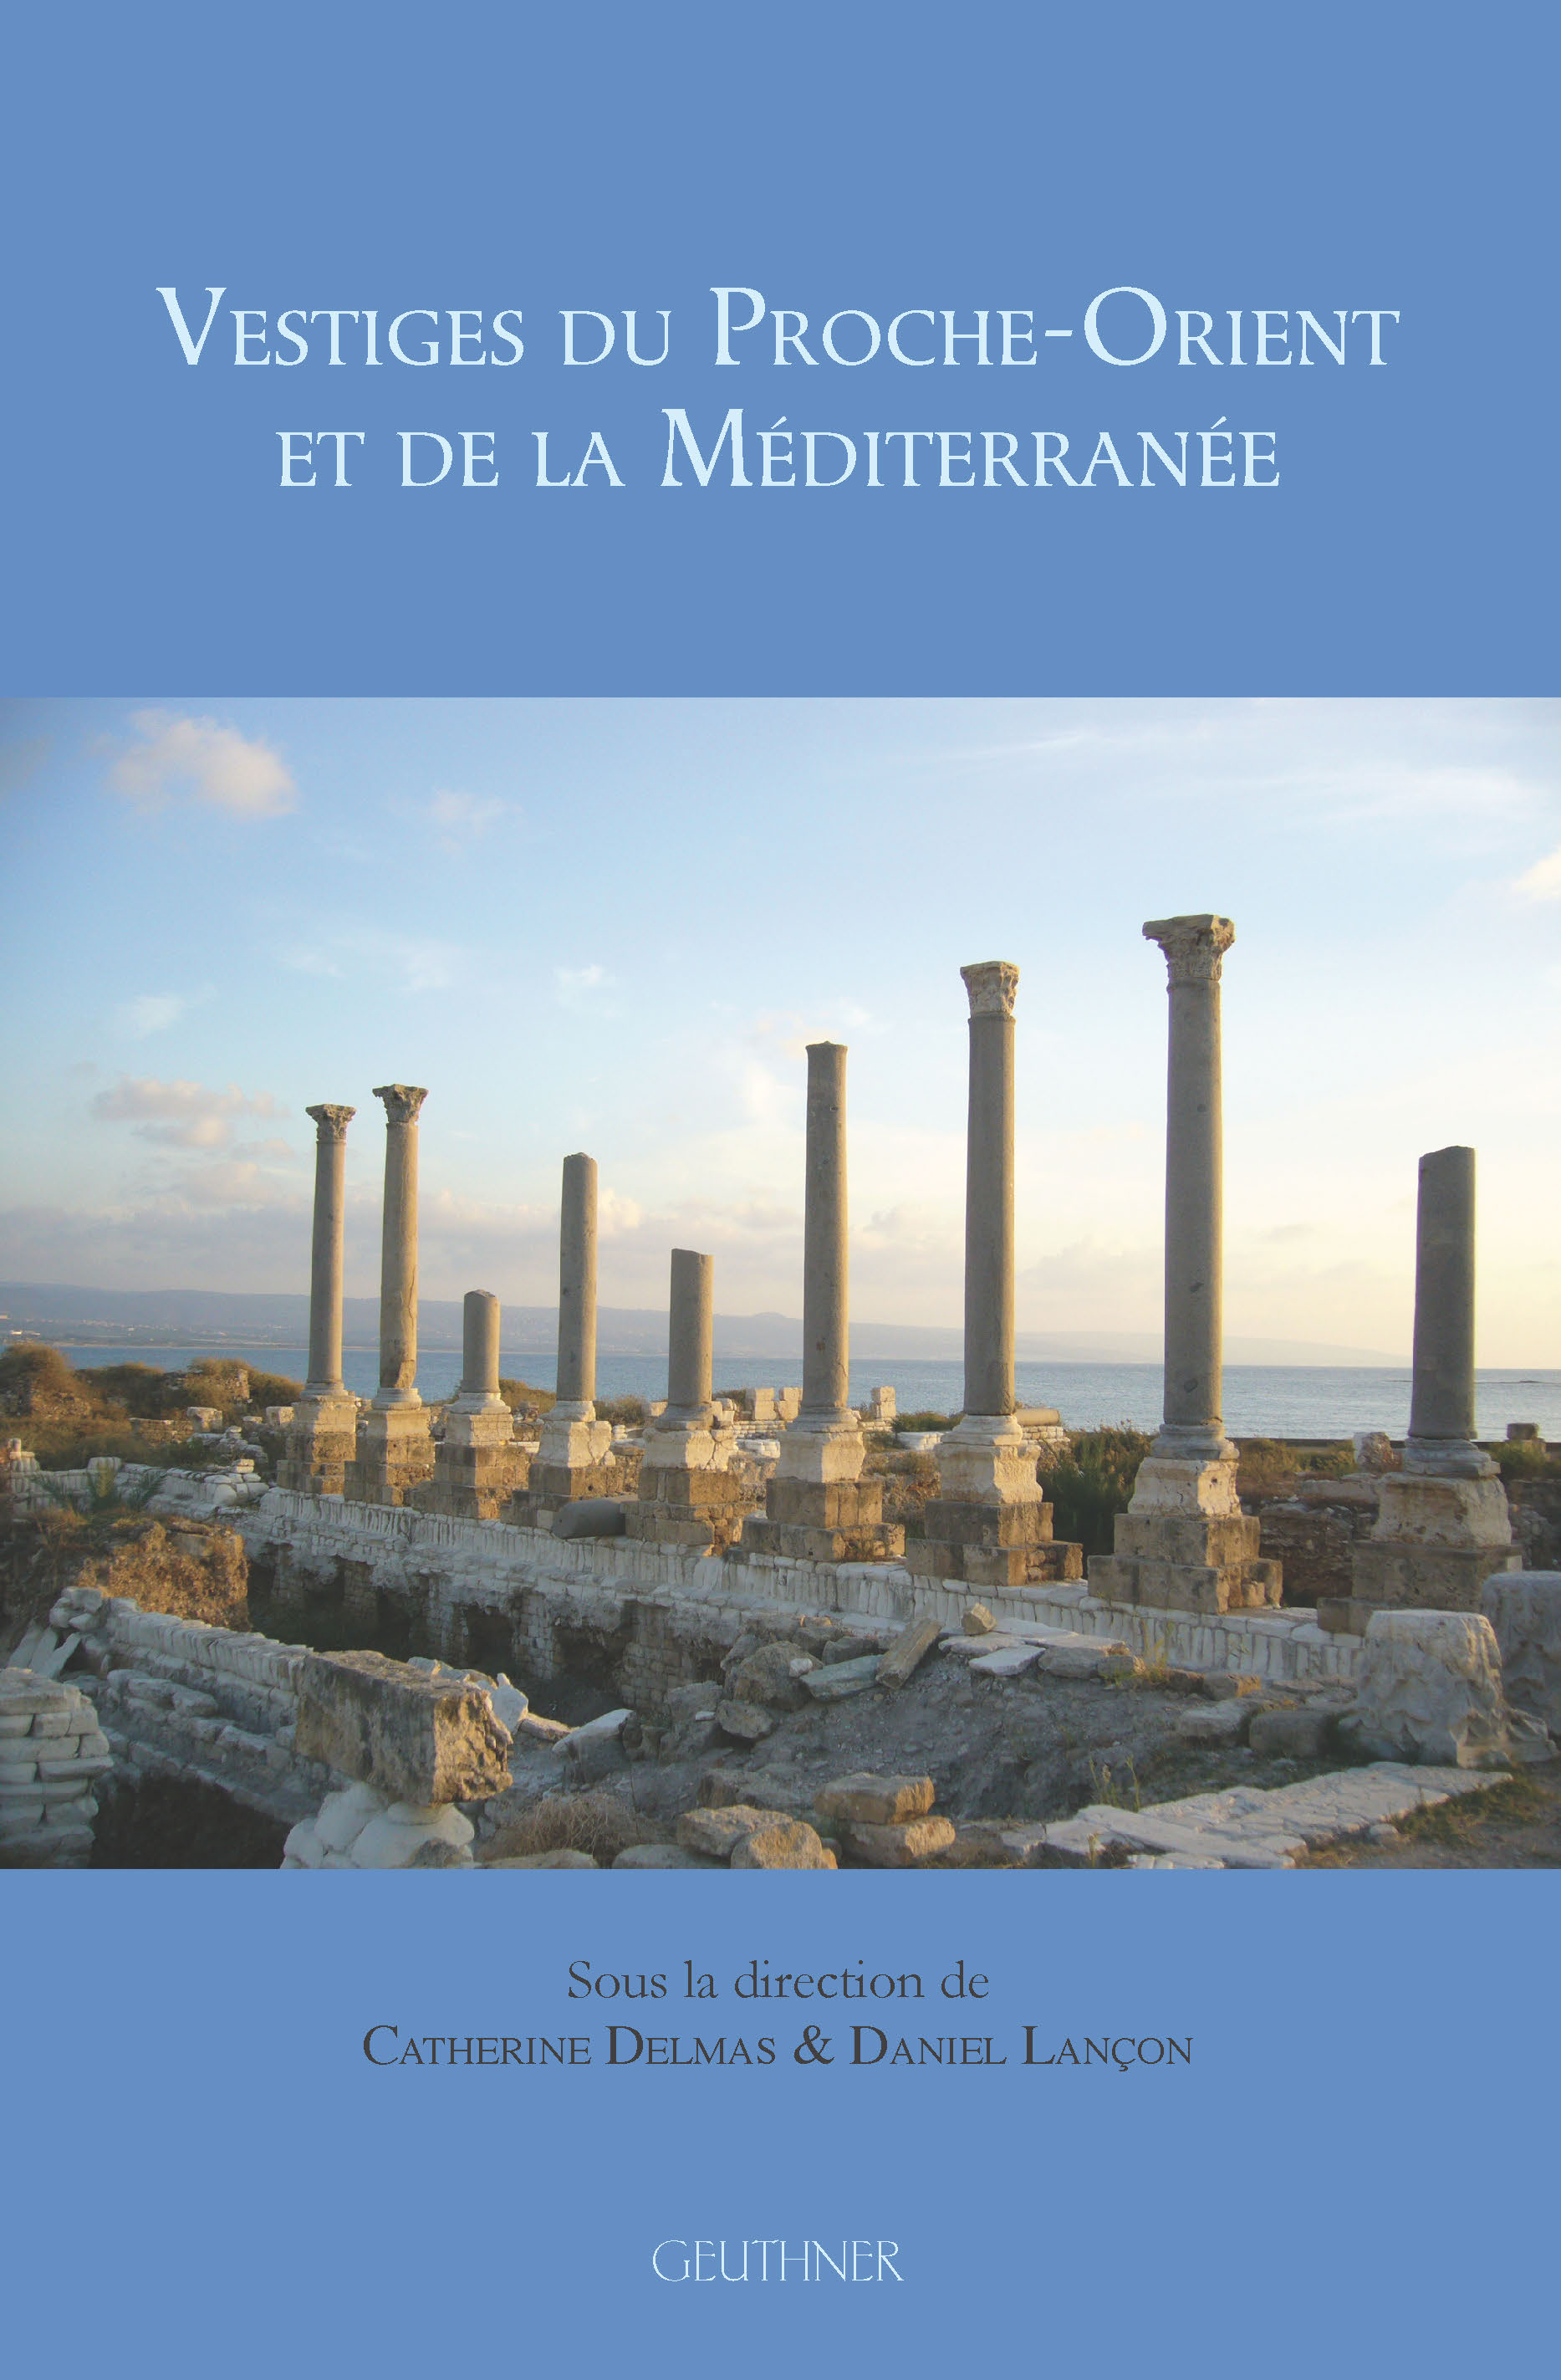 Vestiges du Proche-Orient et de la Méditerranée, 2015, 258 p., qq ill. n.b.